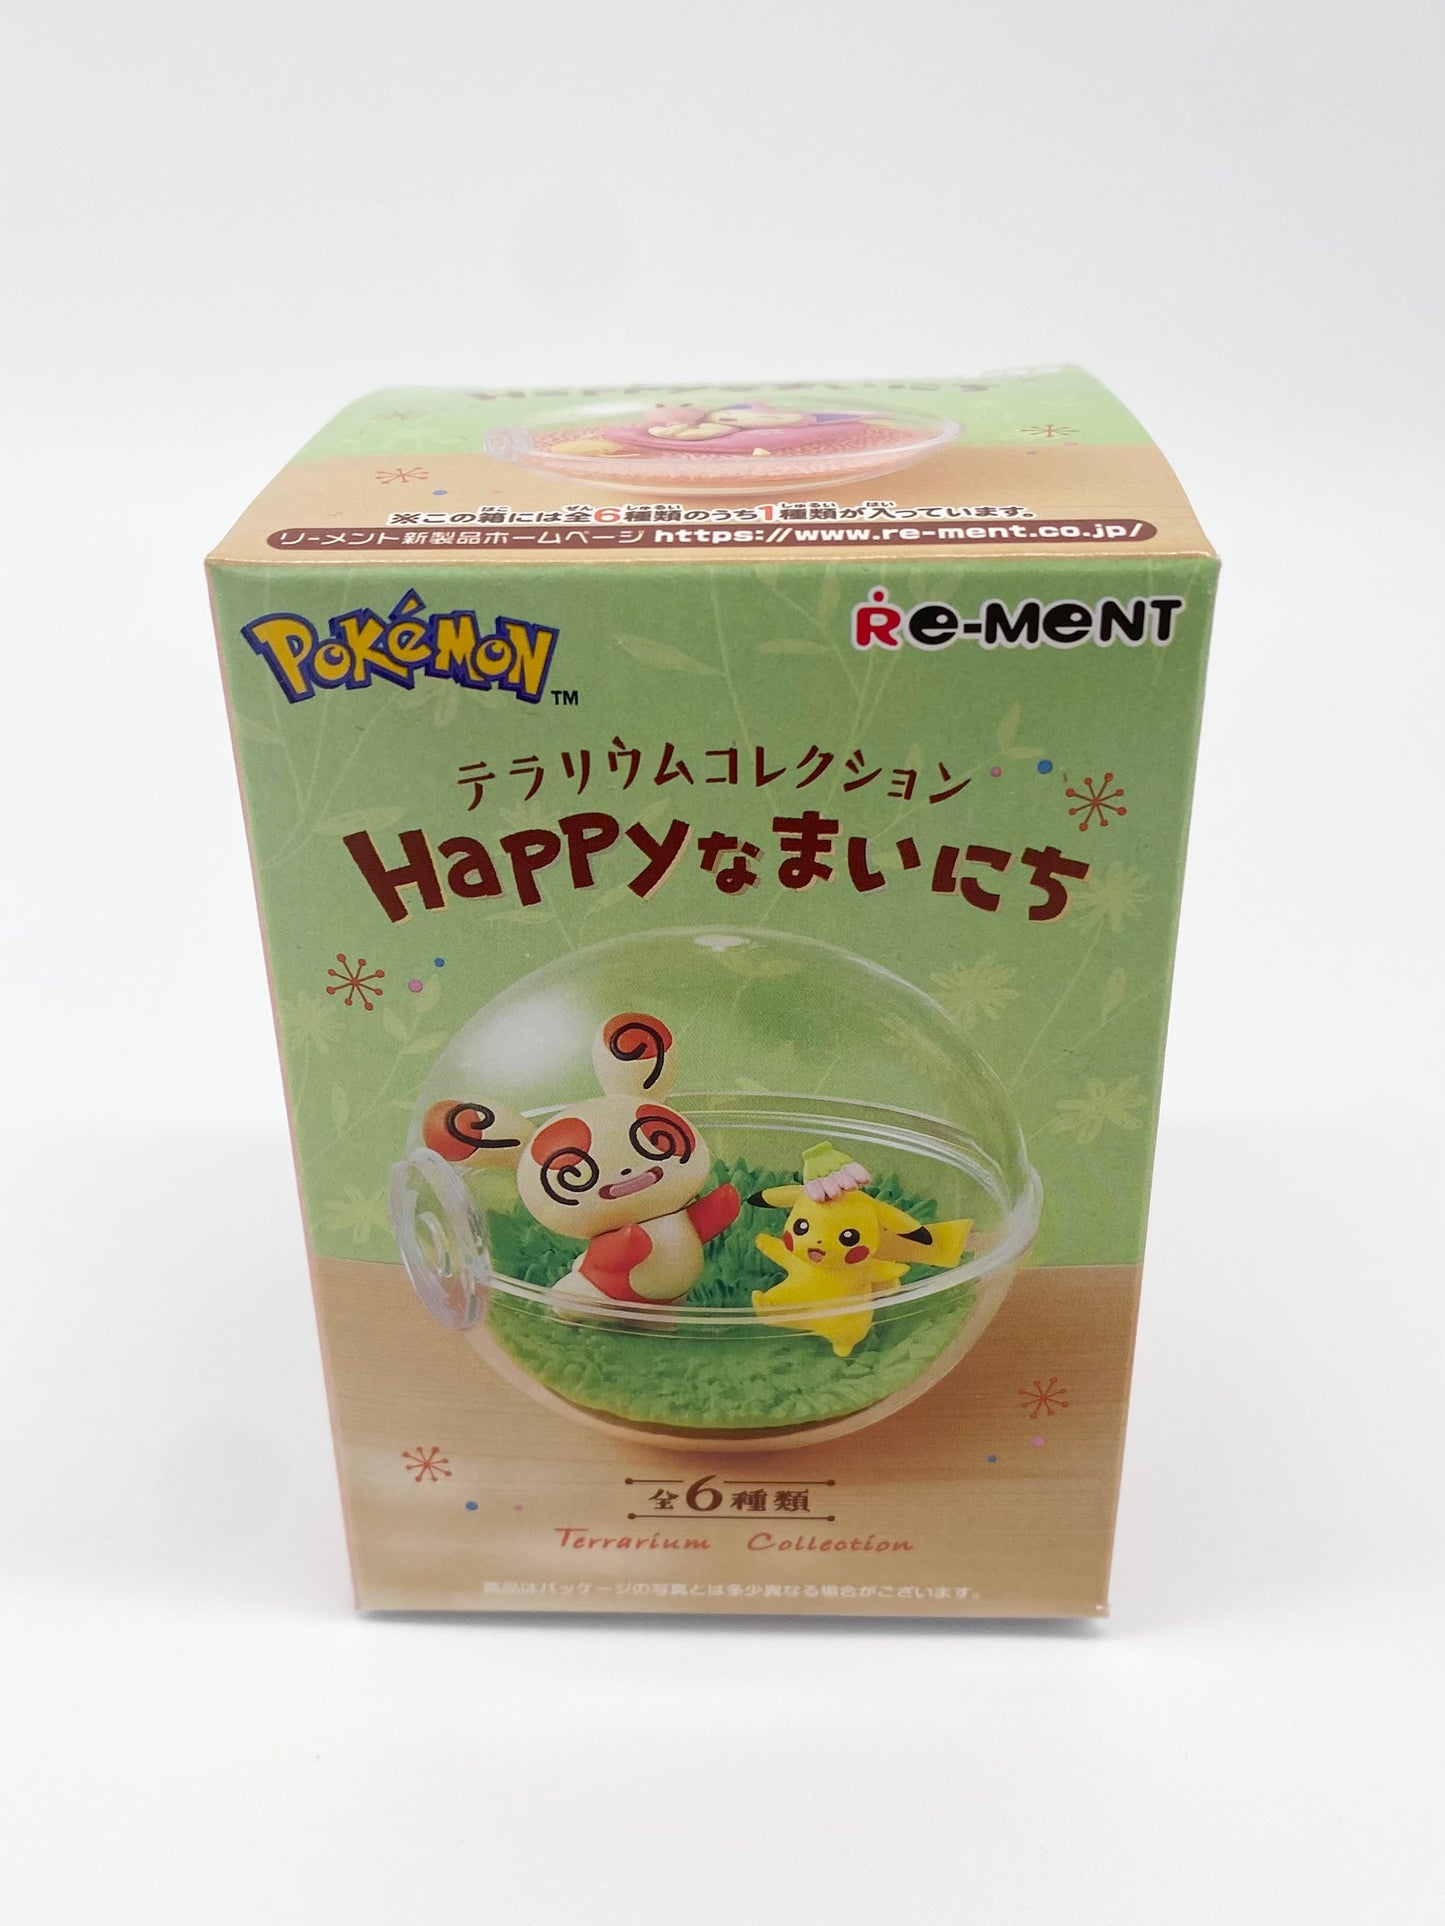 Pokemon Re-Ment Official Blind Box Happy Terrarium Collection